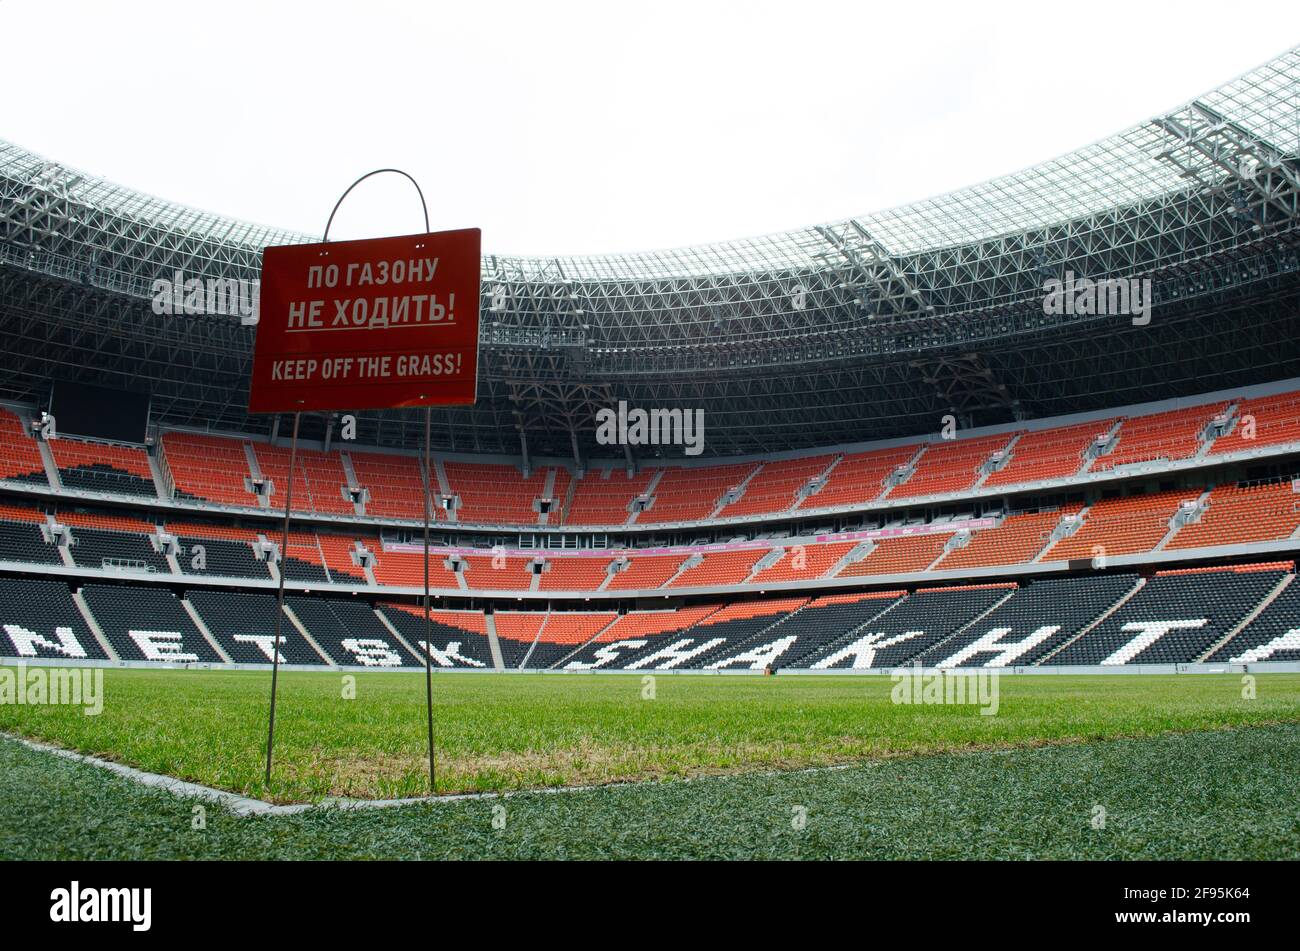 16 avril 2021. Région de Donetsk, Ukraine. Les stands au stade Donbass Arena du club de football Shakhtar (Donetsk) dans la République populaire autoproclamée de Donetsk. Le stade n'accepte plus les matchs. Banque D'Images